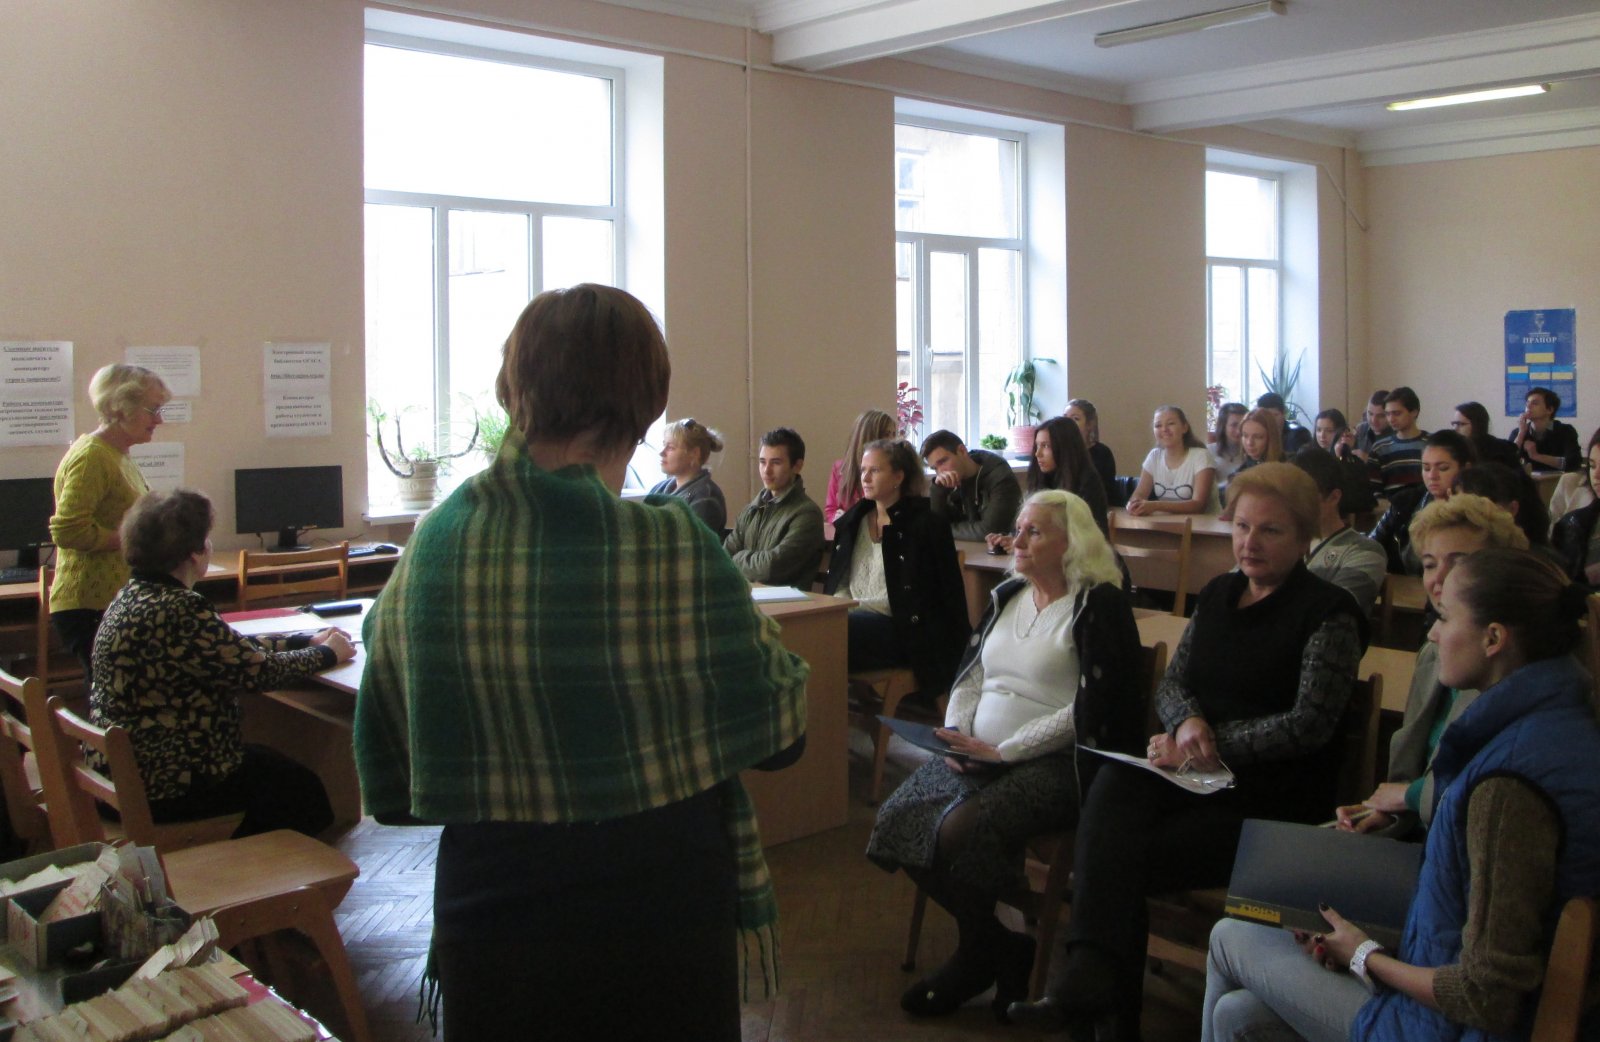 Изображение 14 октября состоялась литературная конференция посвященная празднованию Дня Украинского казачества 2014